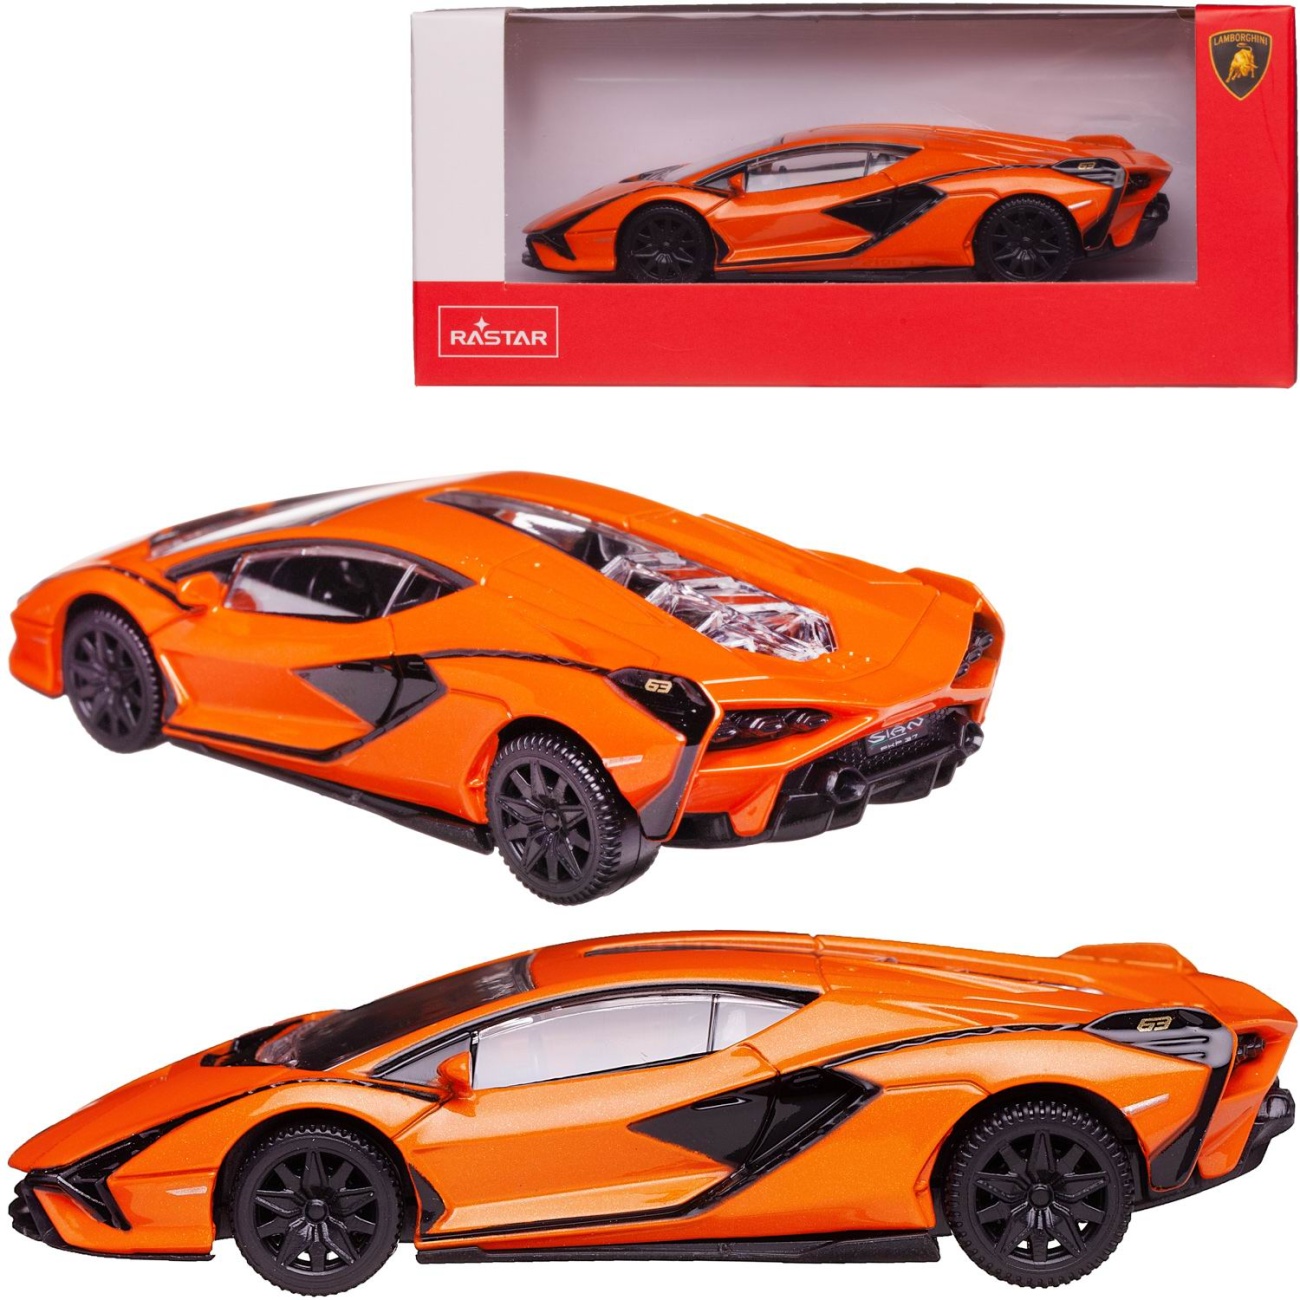 Машина металл 1:43 scale Lamborghini Sian, цвет оранжевый Rastar 58900OR